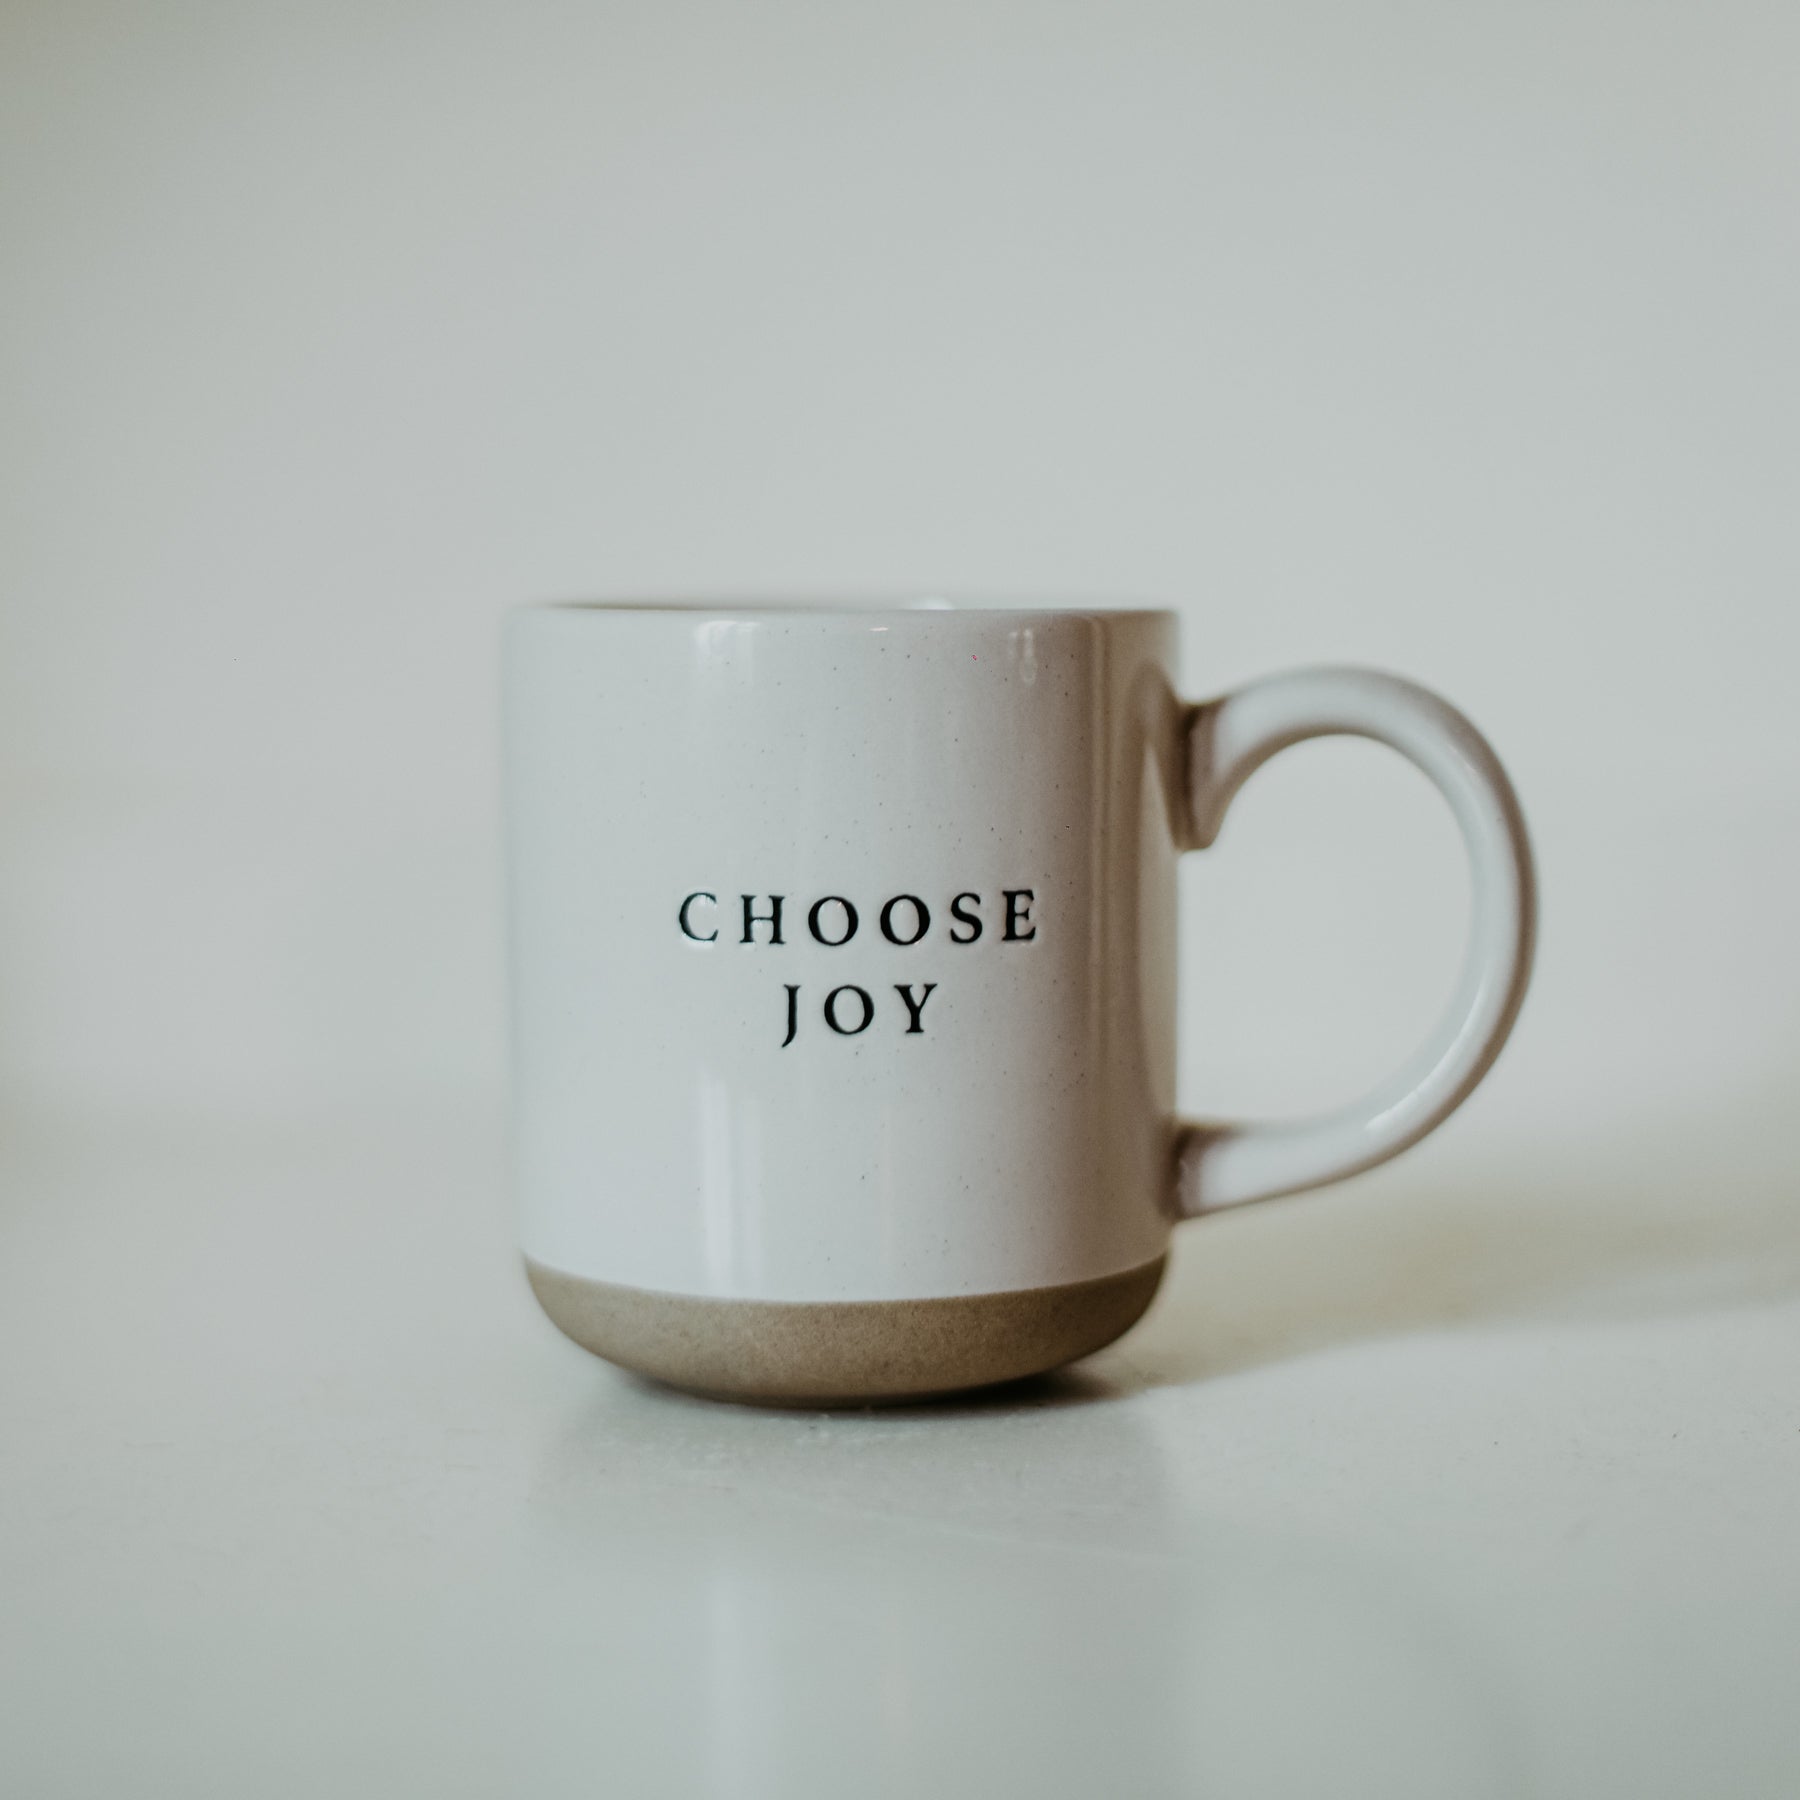 Choose Joy Coffee Mug by Union Shore